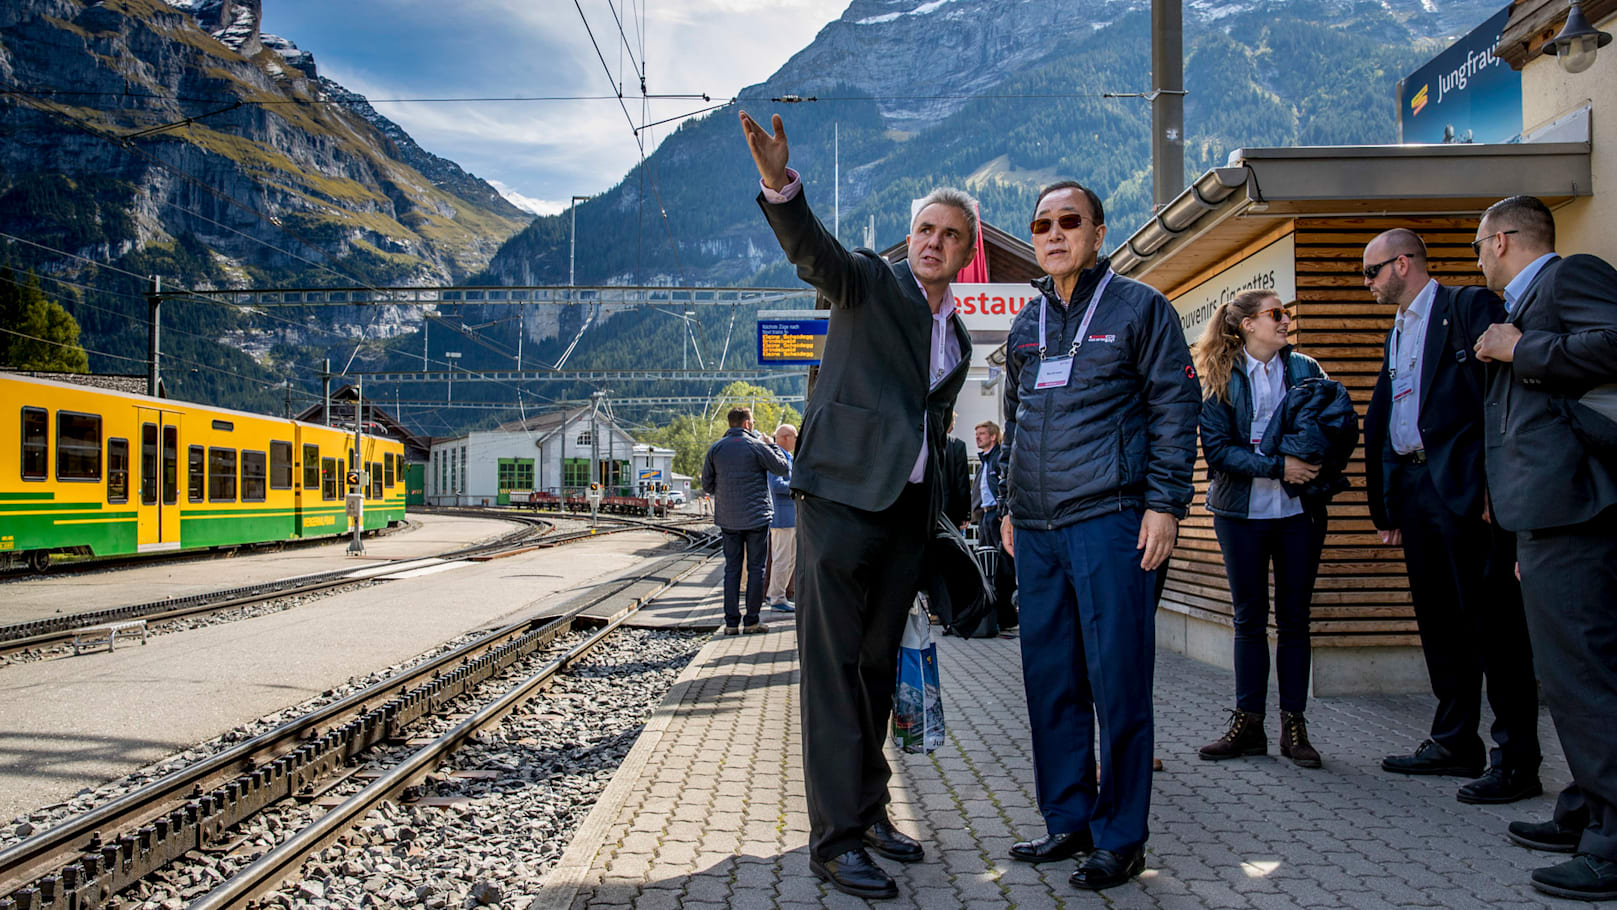 Urs Kessler mit Ban Ki moon in Grindelwald Grund